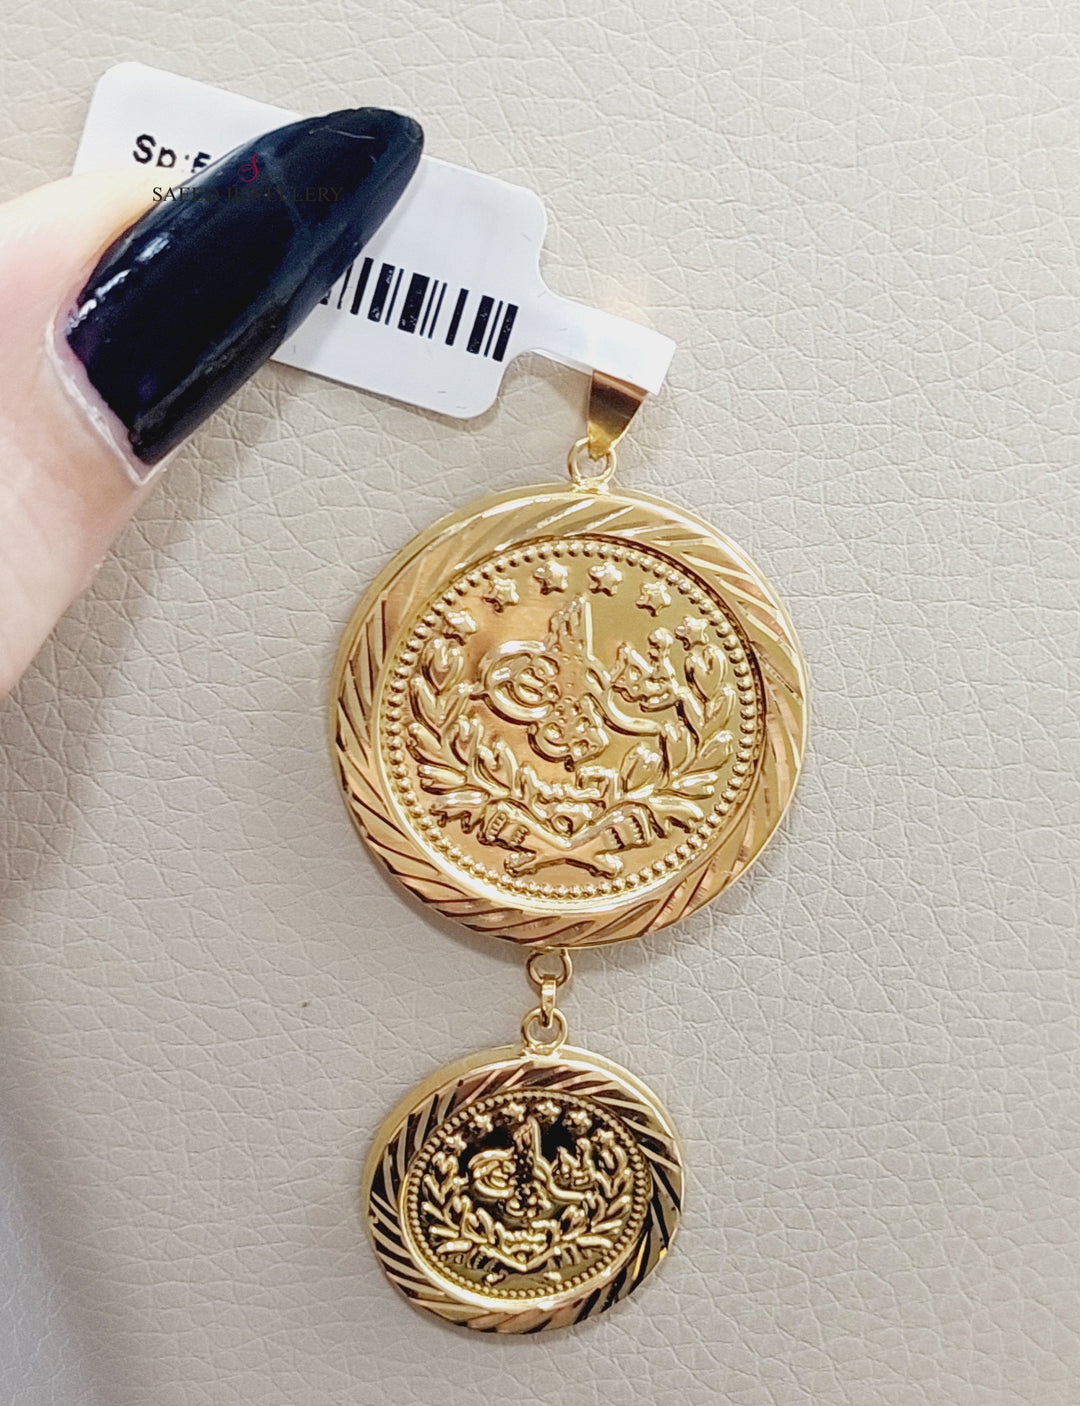 18K Rashadi Pendant Made of 18K Yellow Gold by Saeed Jewelry-تعليقة-رشادي-1